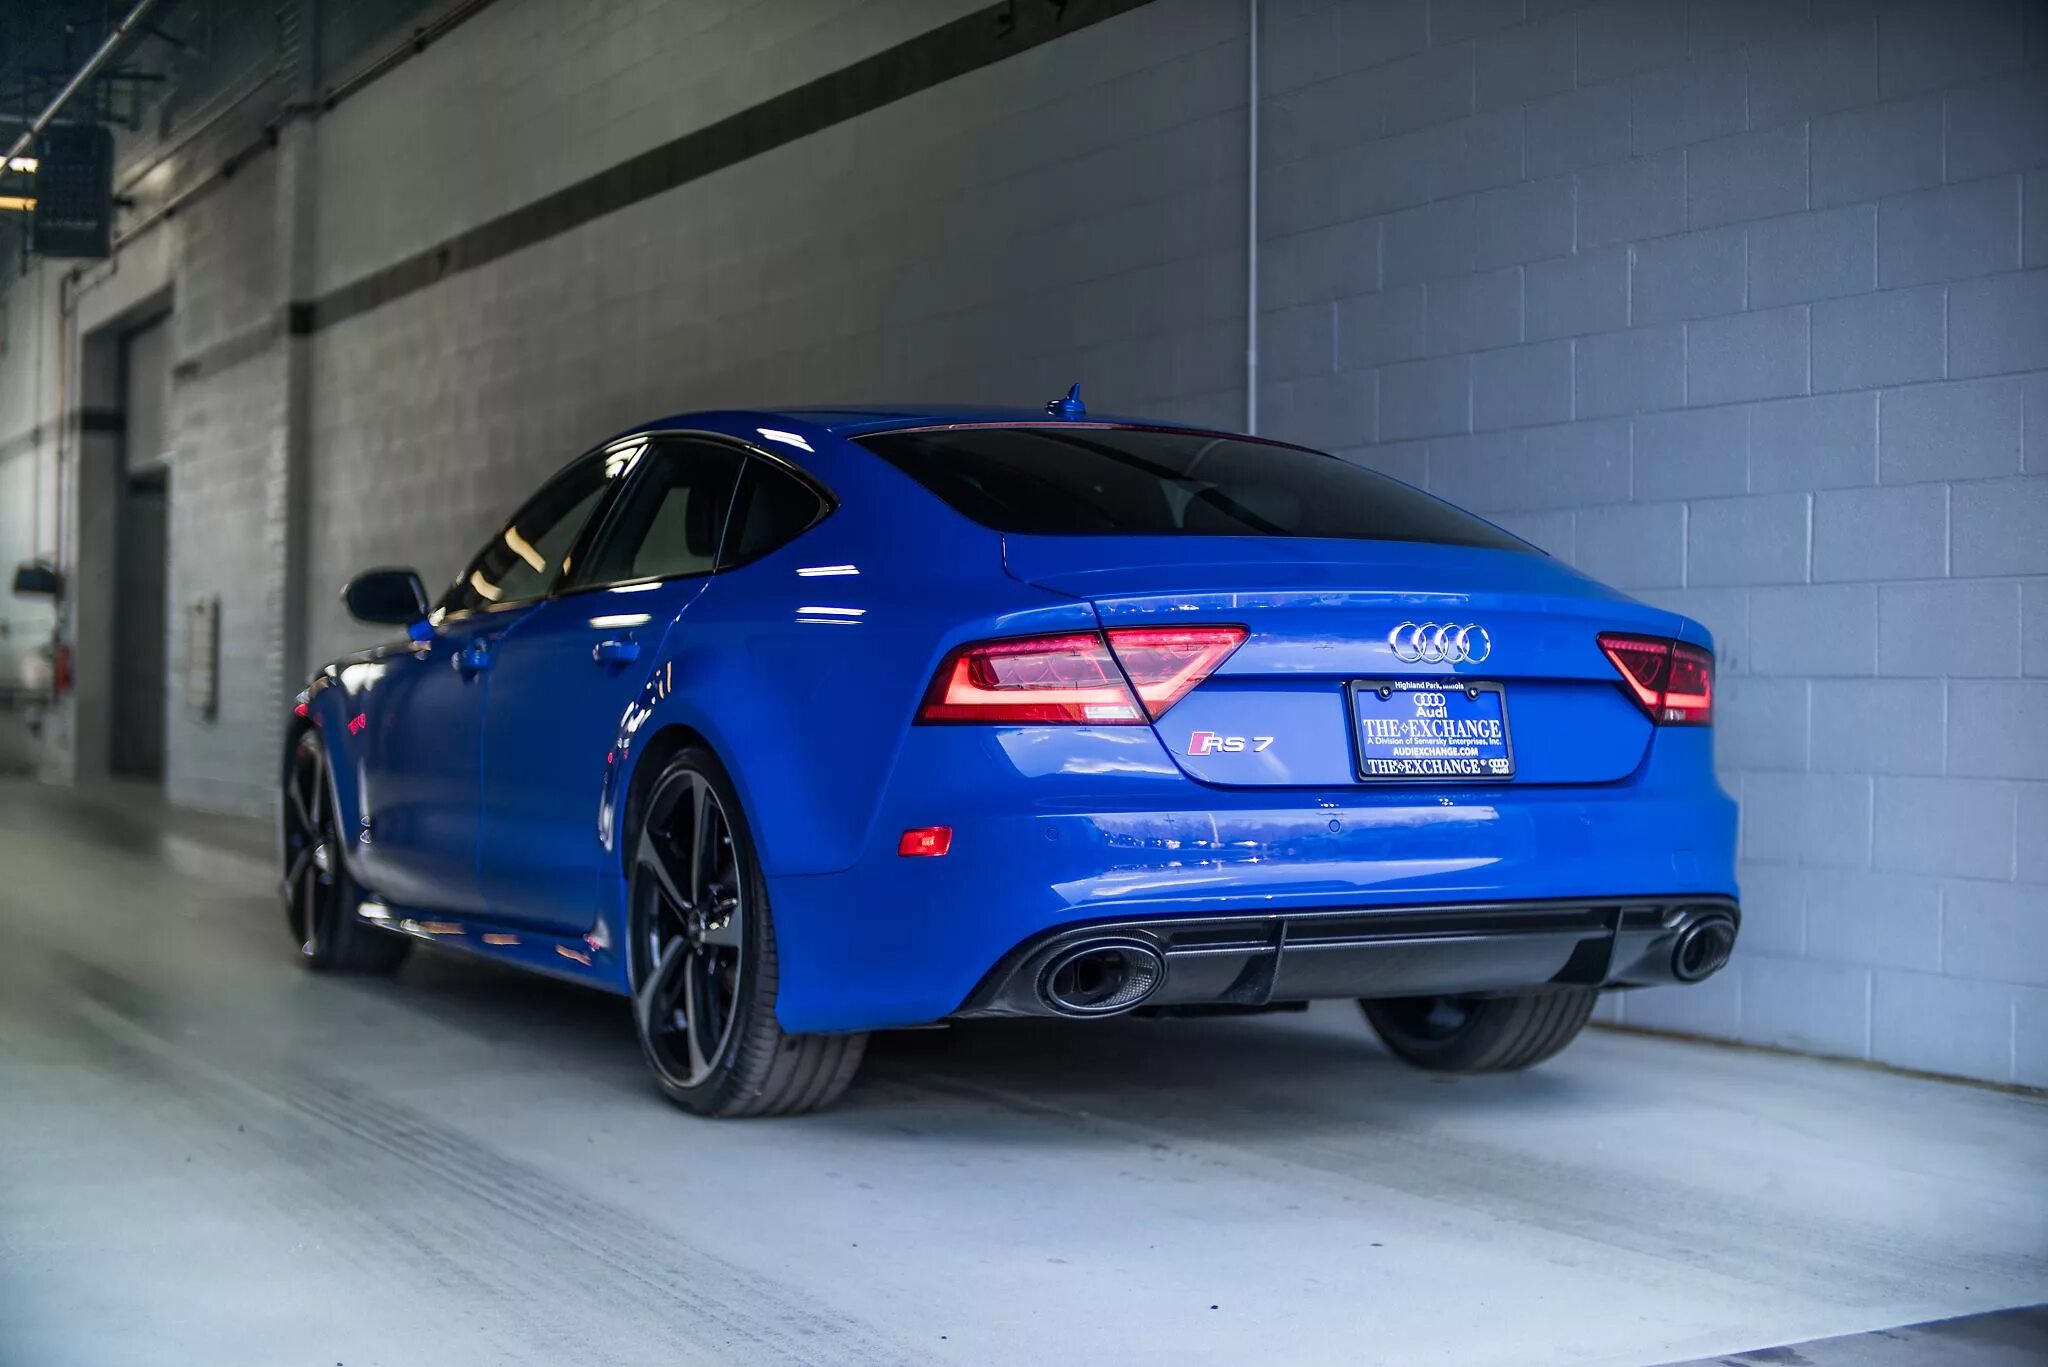 Цвет рс. Audi rs7 Blue. Ауди rs7 синяя. Audi rs7 RS. Audi rs7 Sepang Blue.